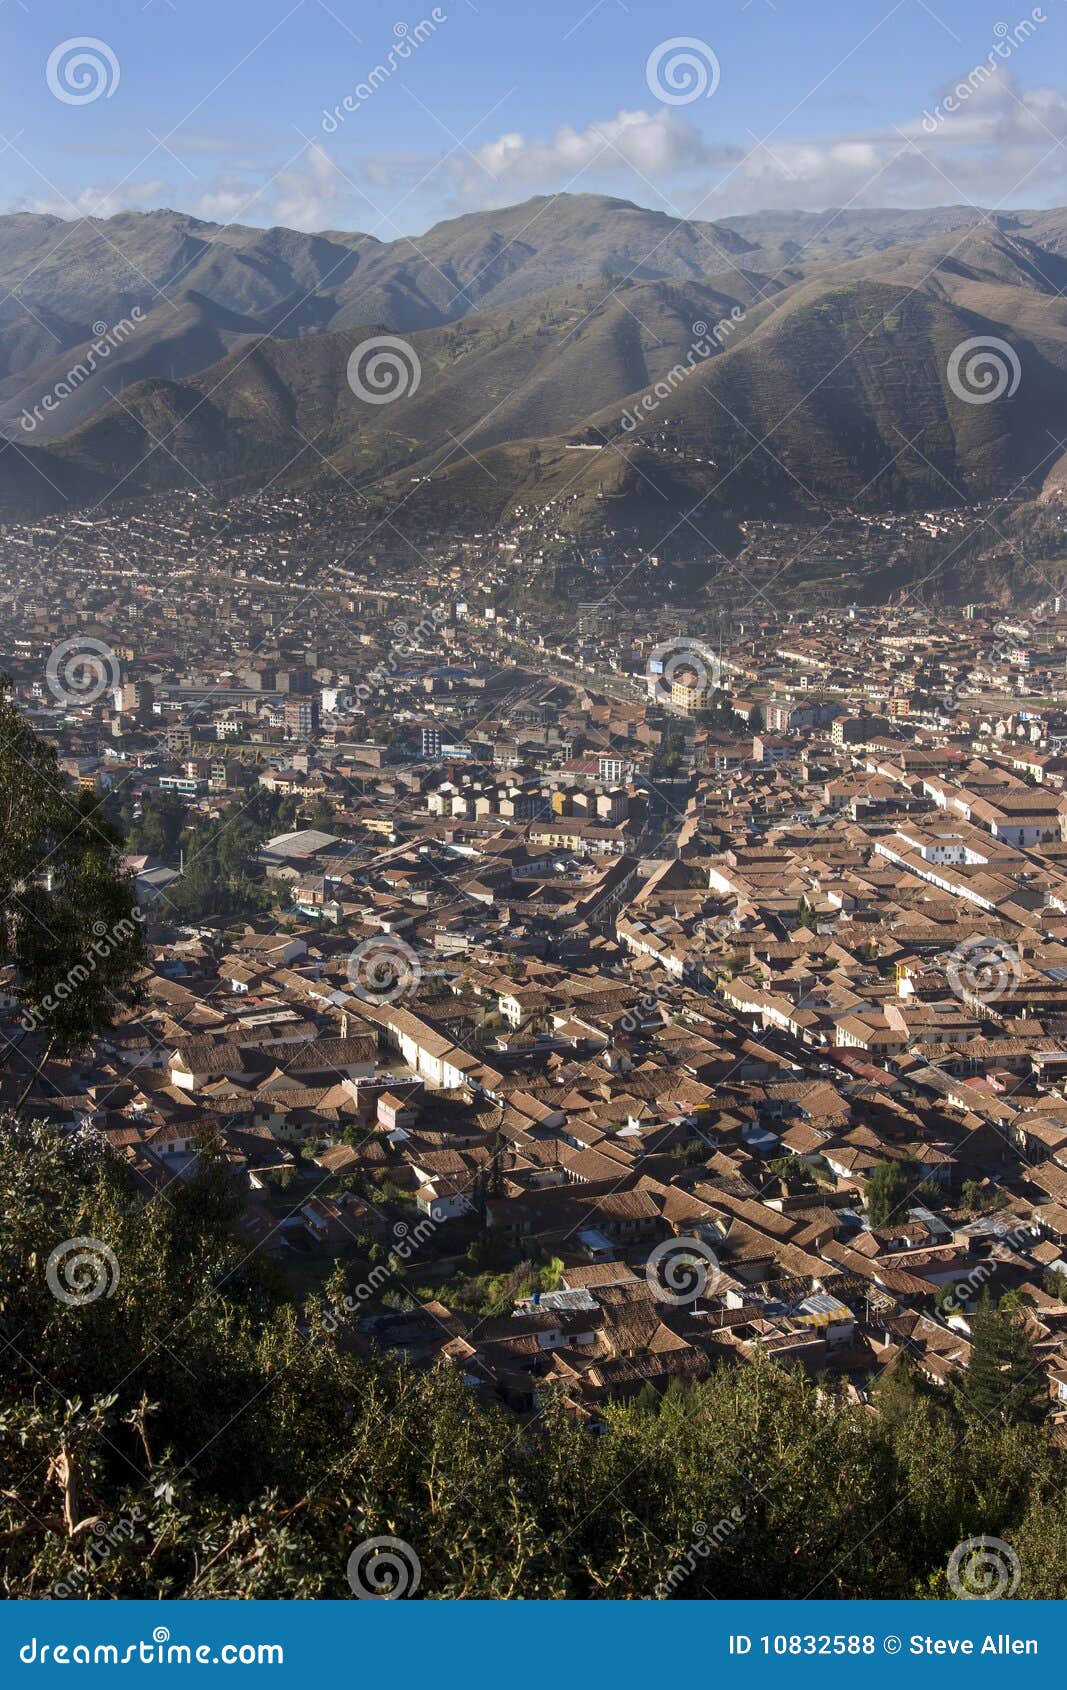 city of cuzco in peru